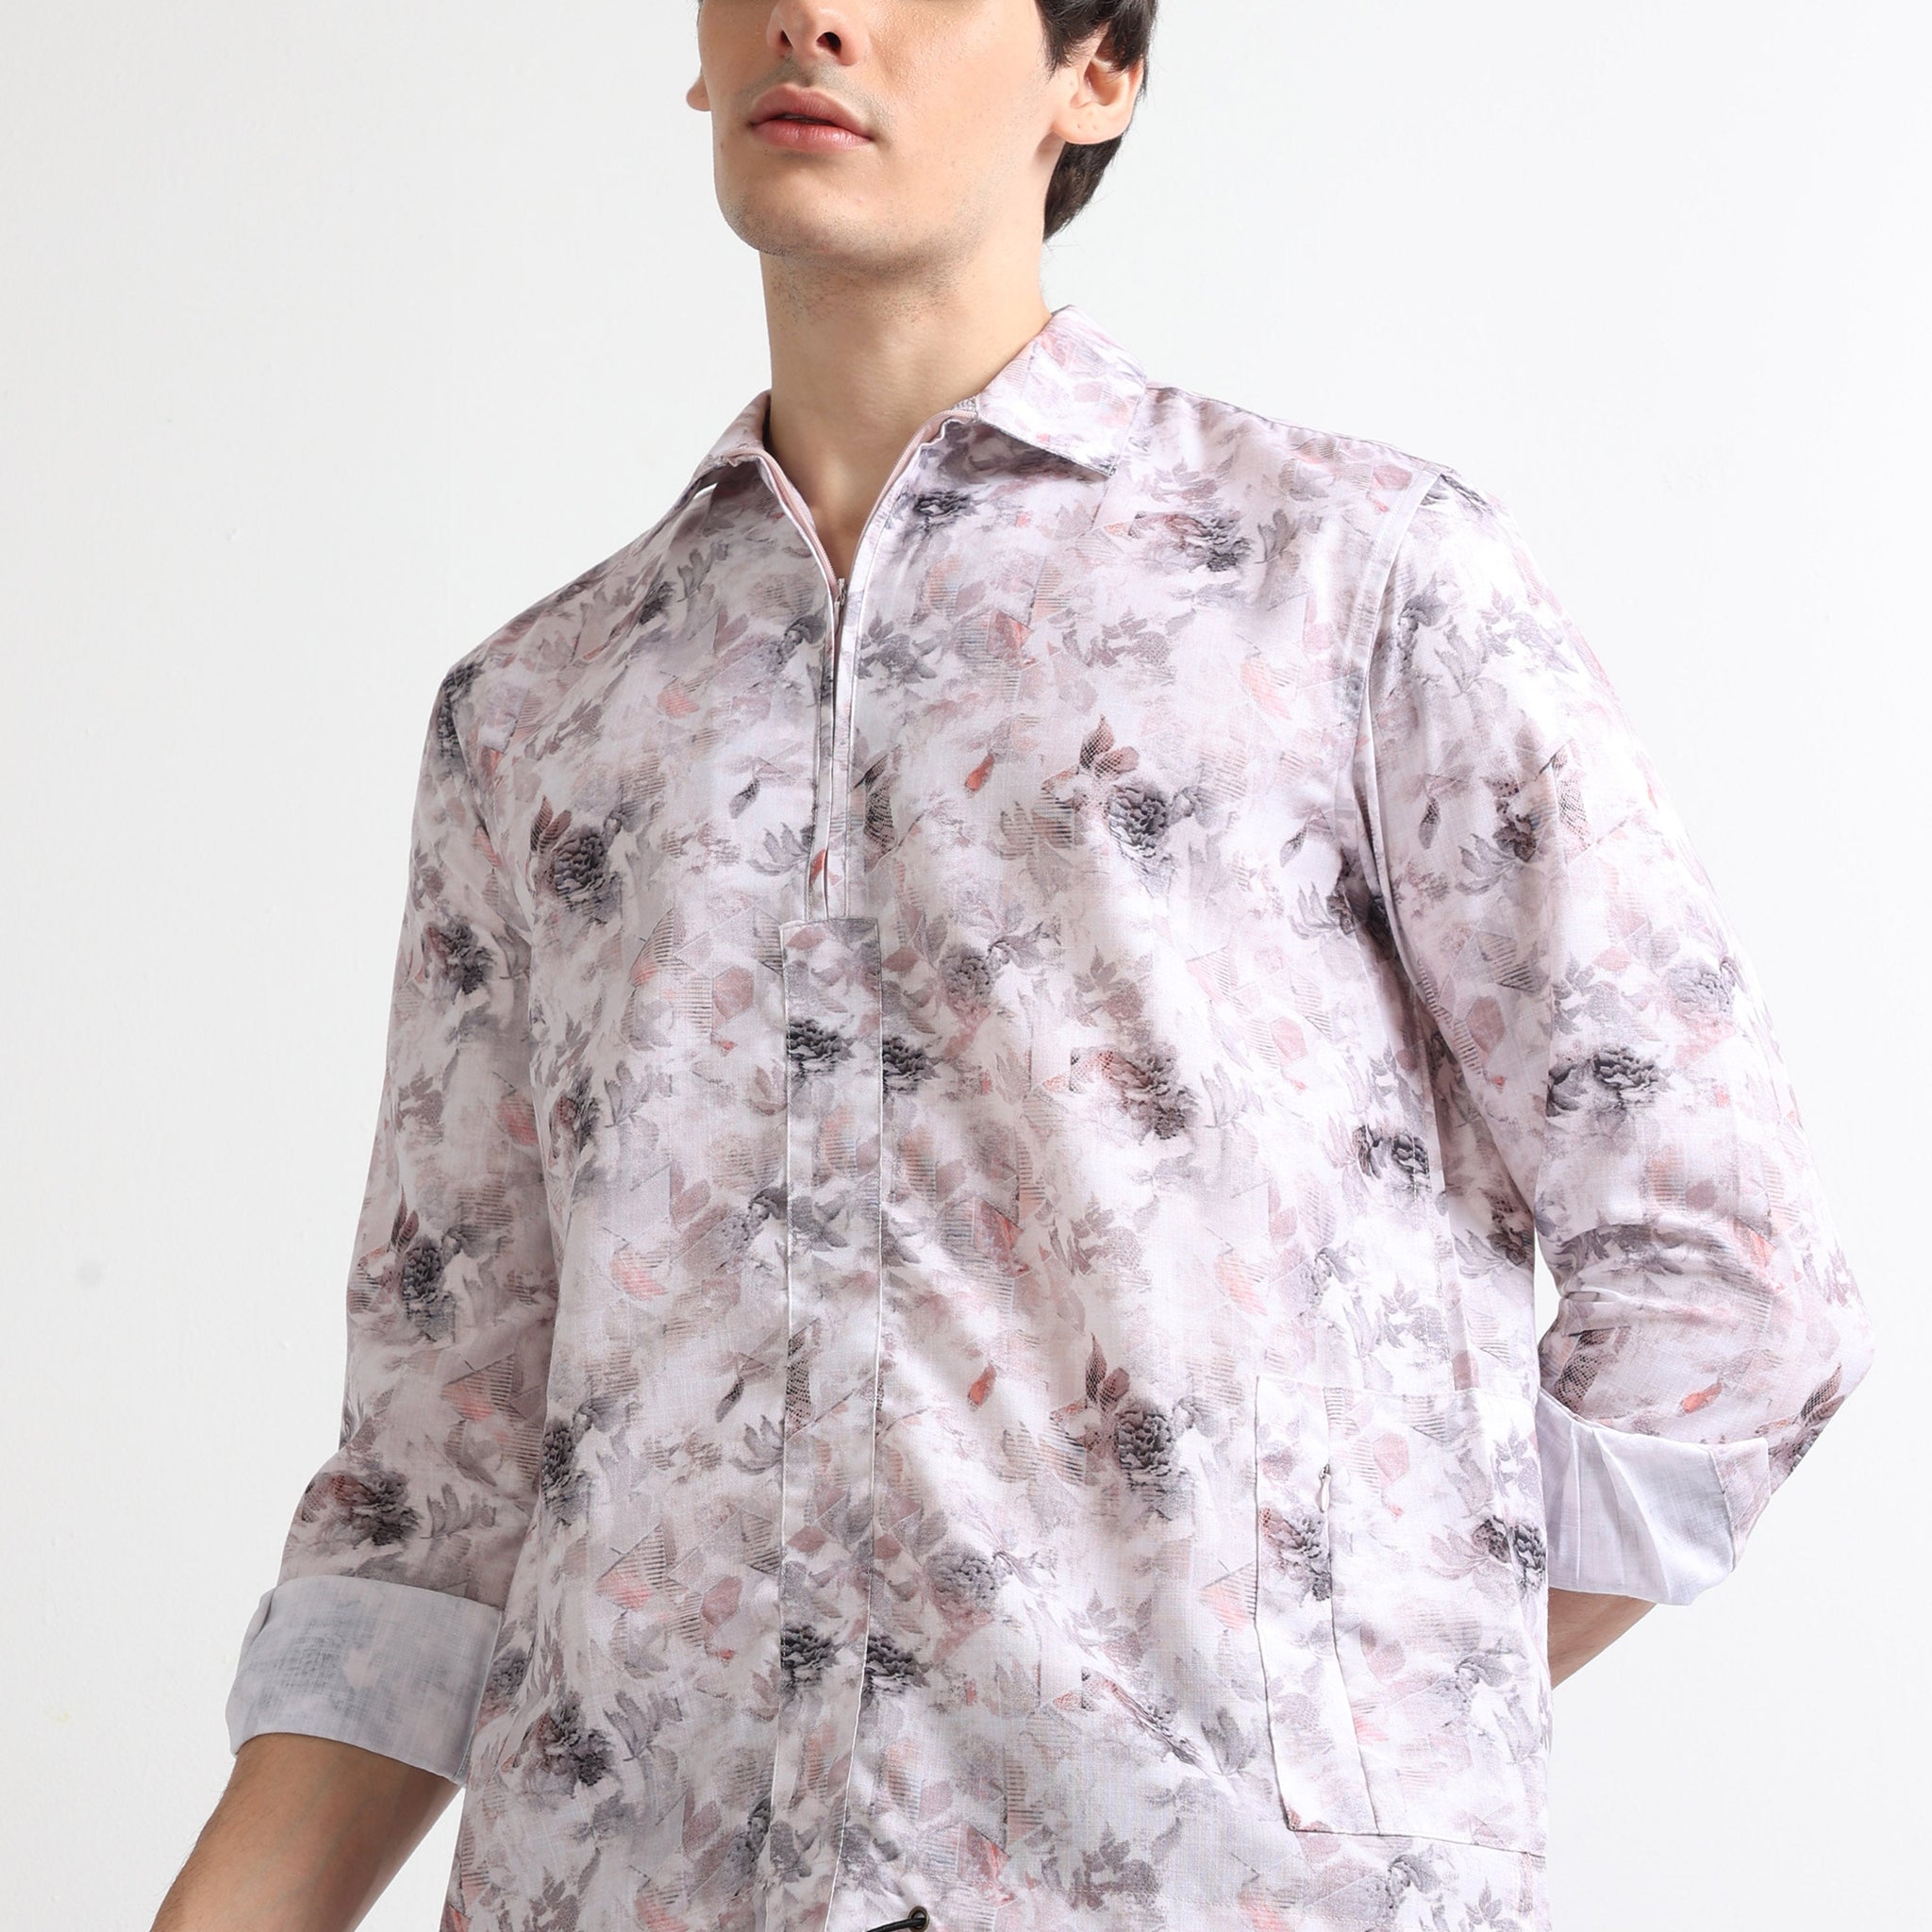 Buy Full Sleeve Digital Printed Shirt Online.